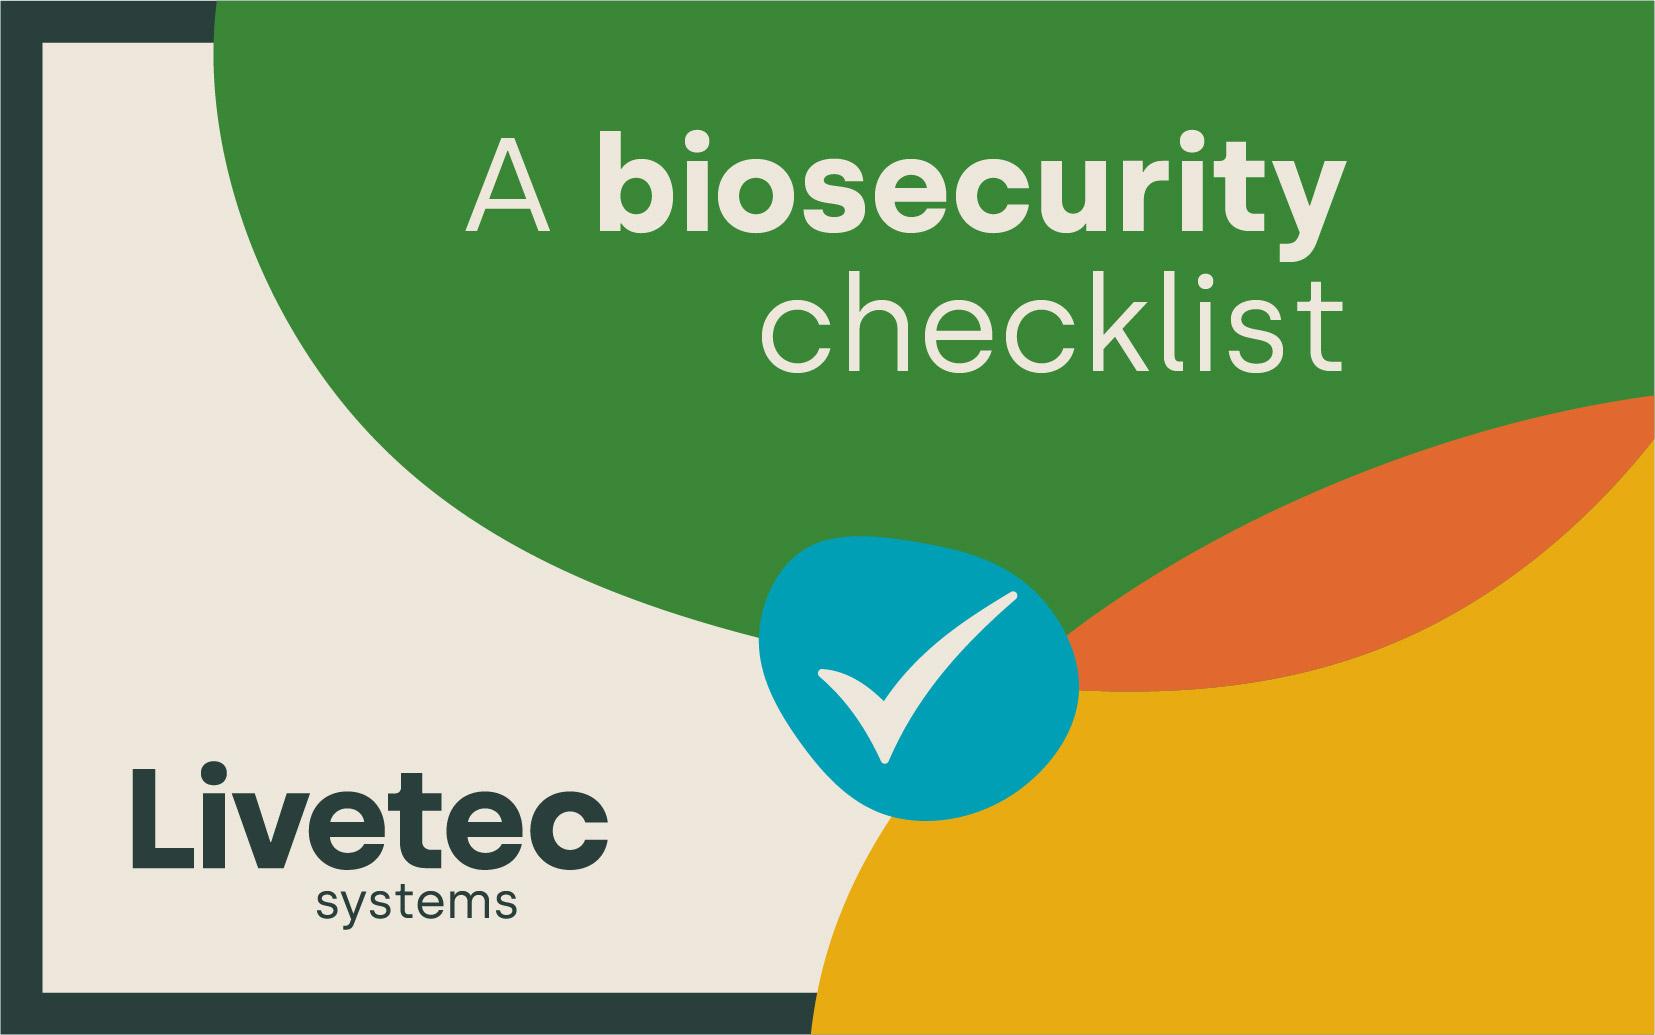 A biosecurity checklist